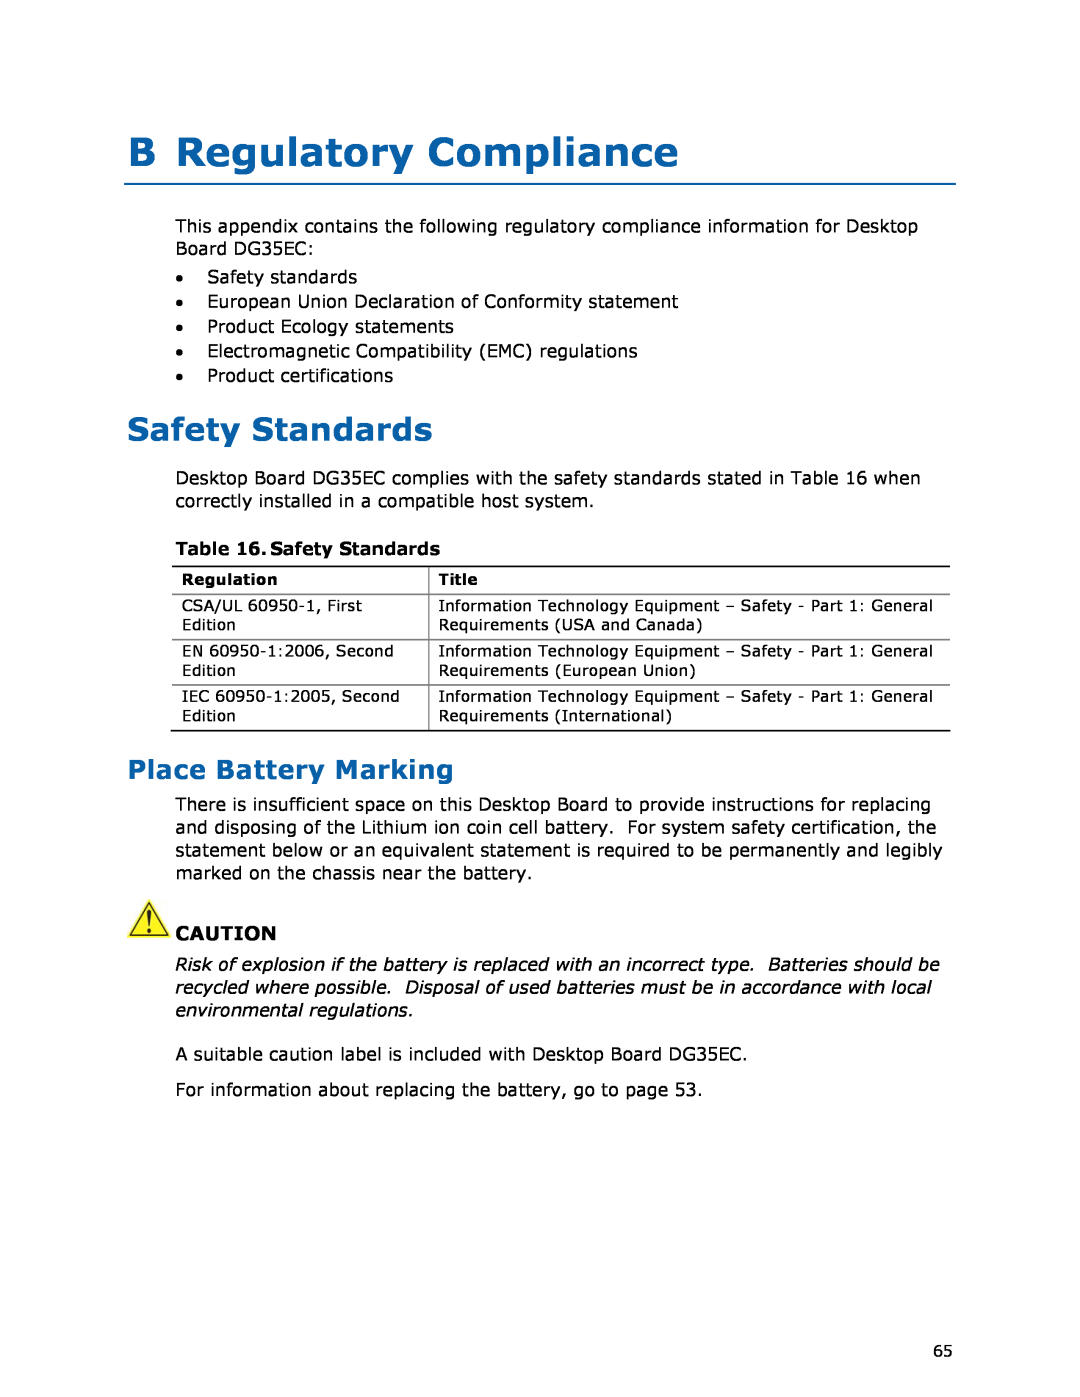 Intel DG35EC, Intel Desktop Board manual B Regulatory Compliance, Safety Standards, Place Battery Marking 